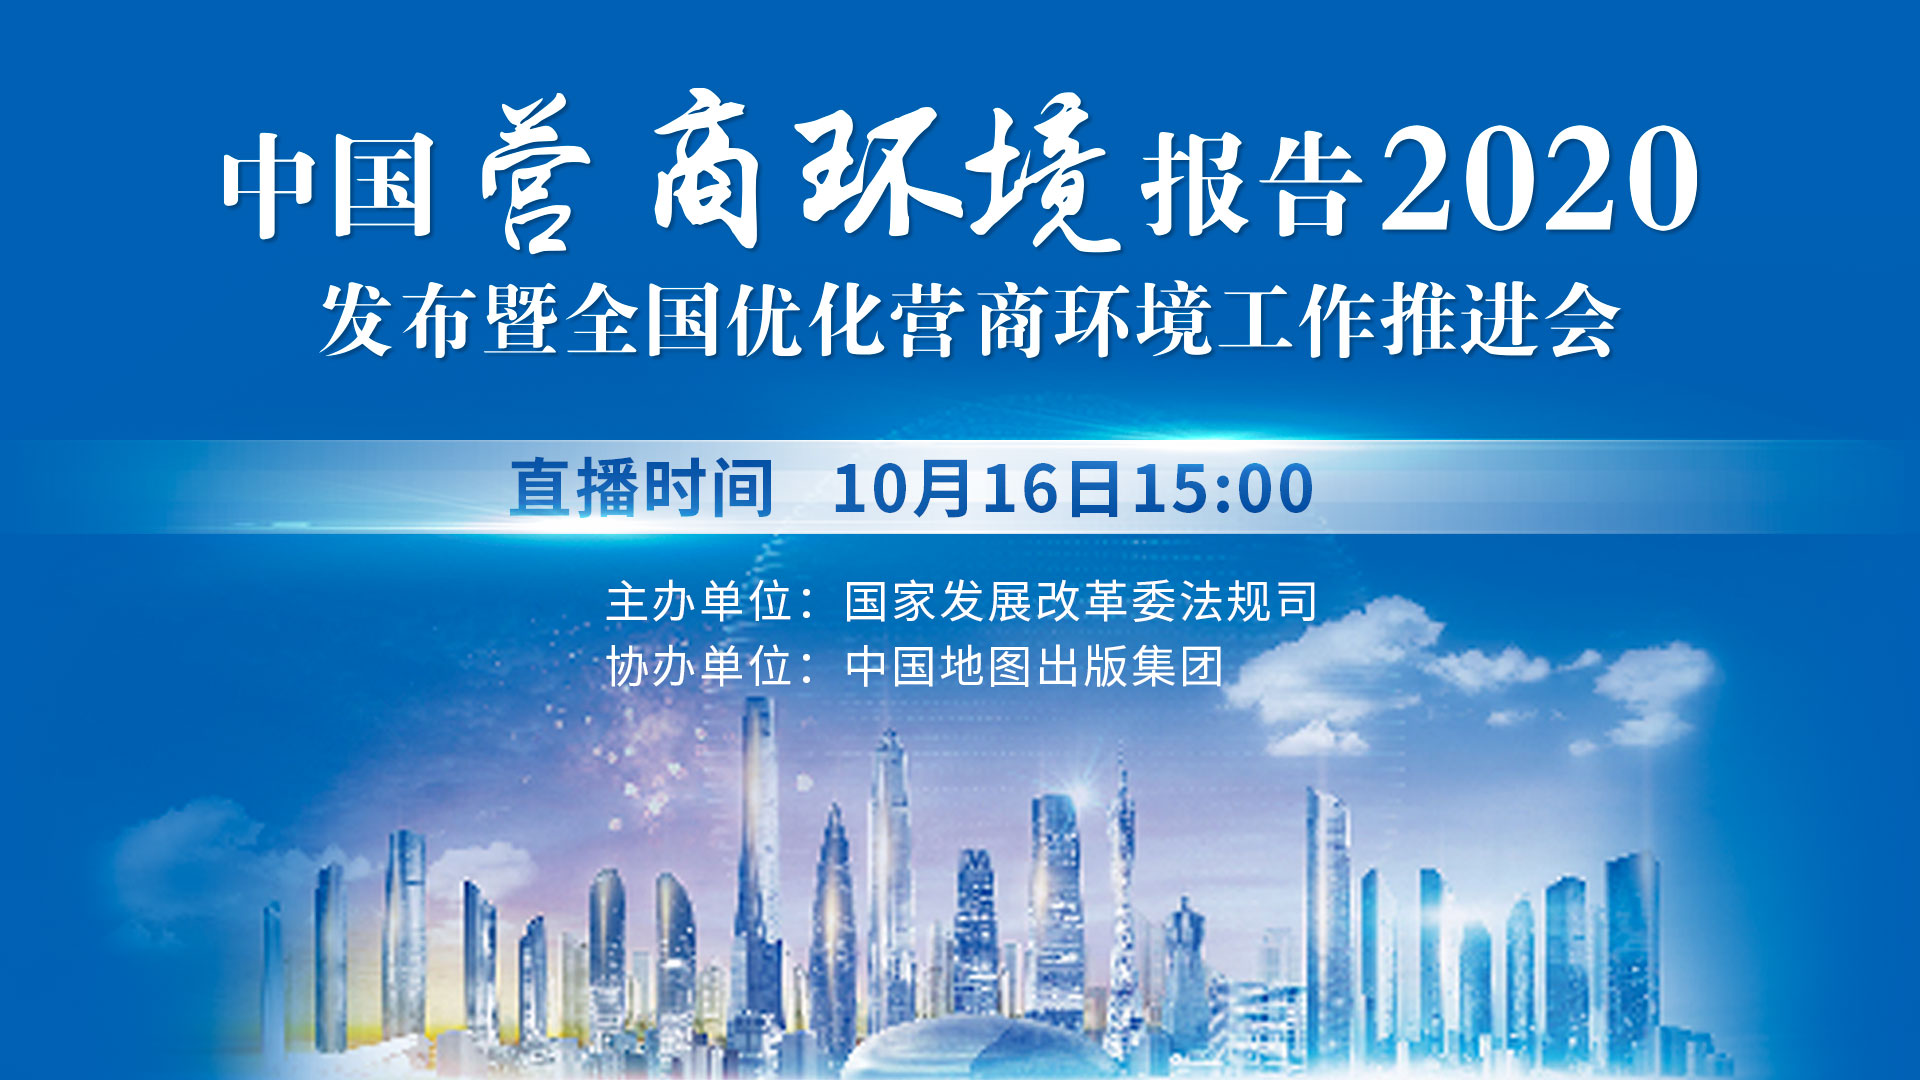 《中國營商環境報告2020》發布暨優化營商環境工作推進會將舉辦